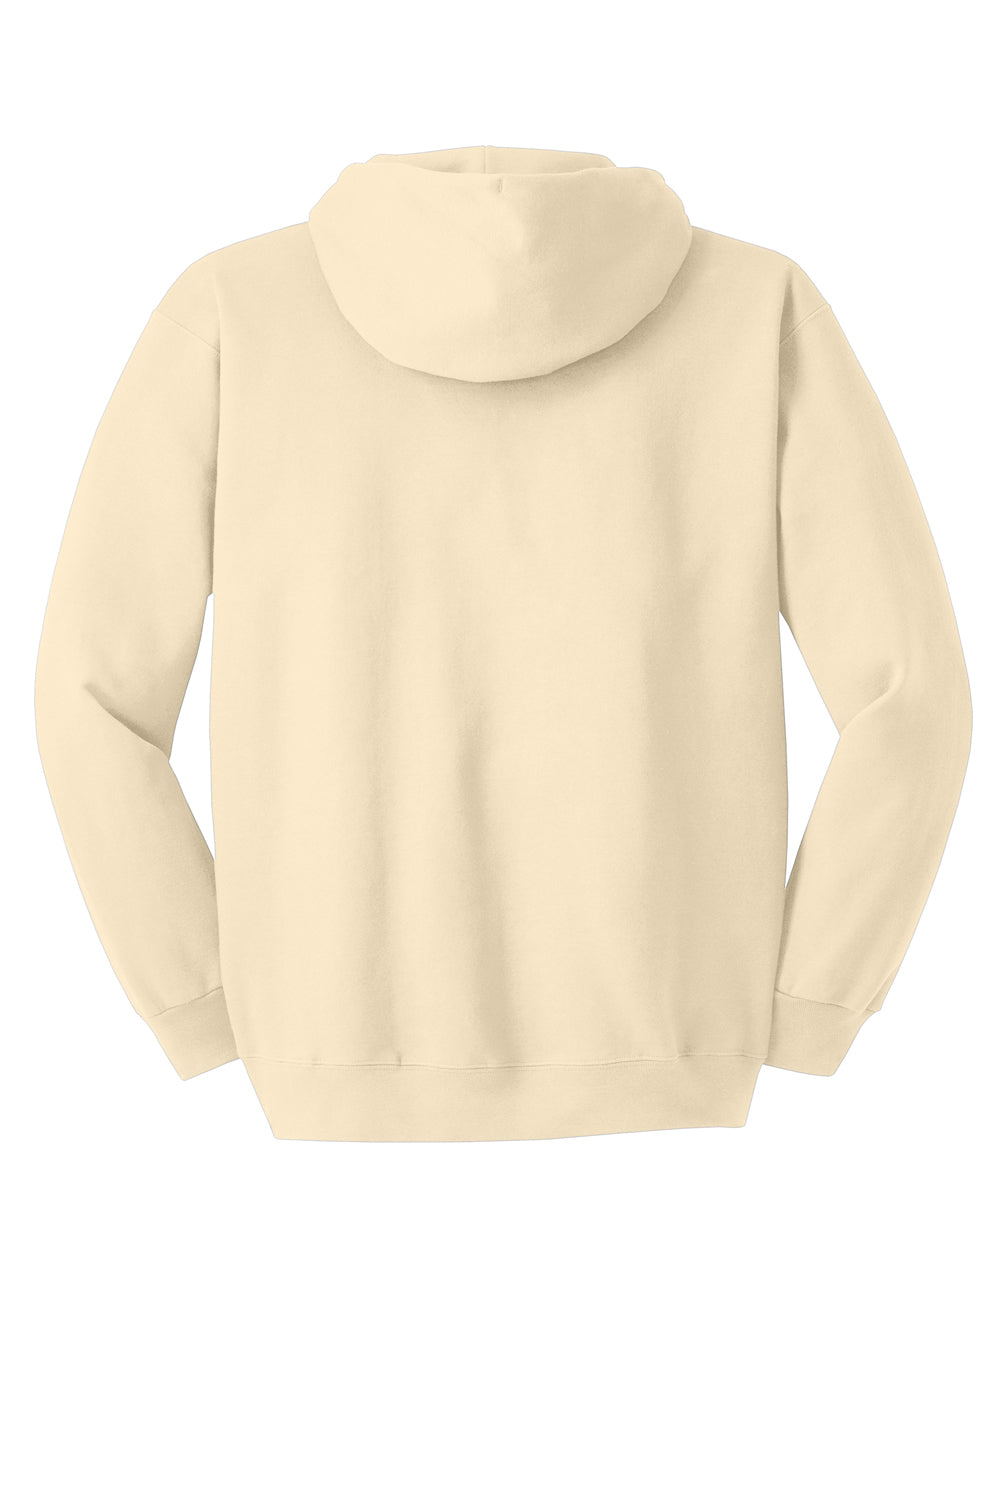 Hanes Mens Ultimate Cotton PrintPro XP Hooded Sweatshirt Hoodie Natural Flat Back